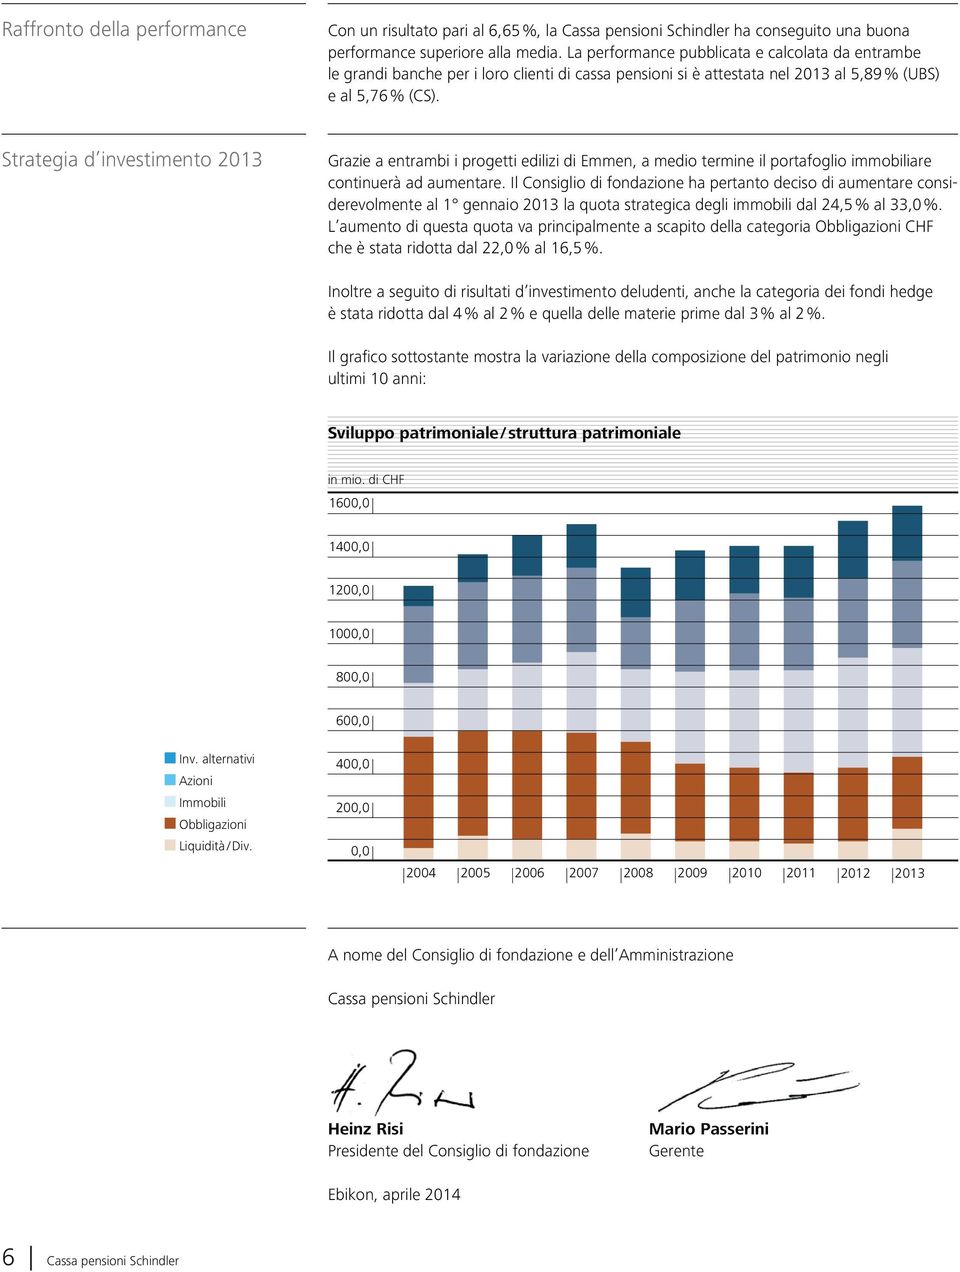 Strategia d investimento 2013 Grazie a entrambi i progetti edilizi di Emmen, a medio termine il portafoglio immobiliare continuerà ad aumentare.